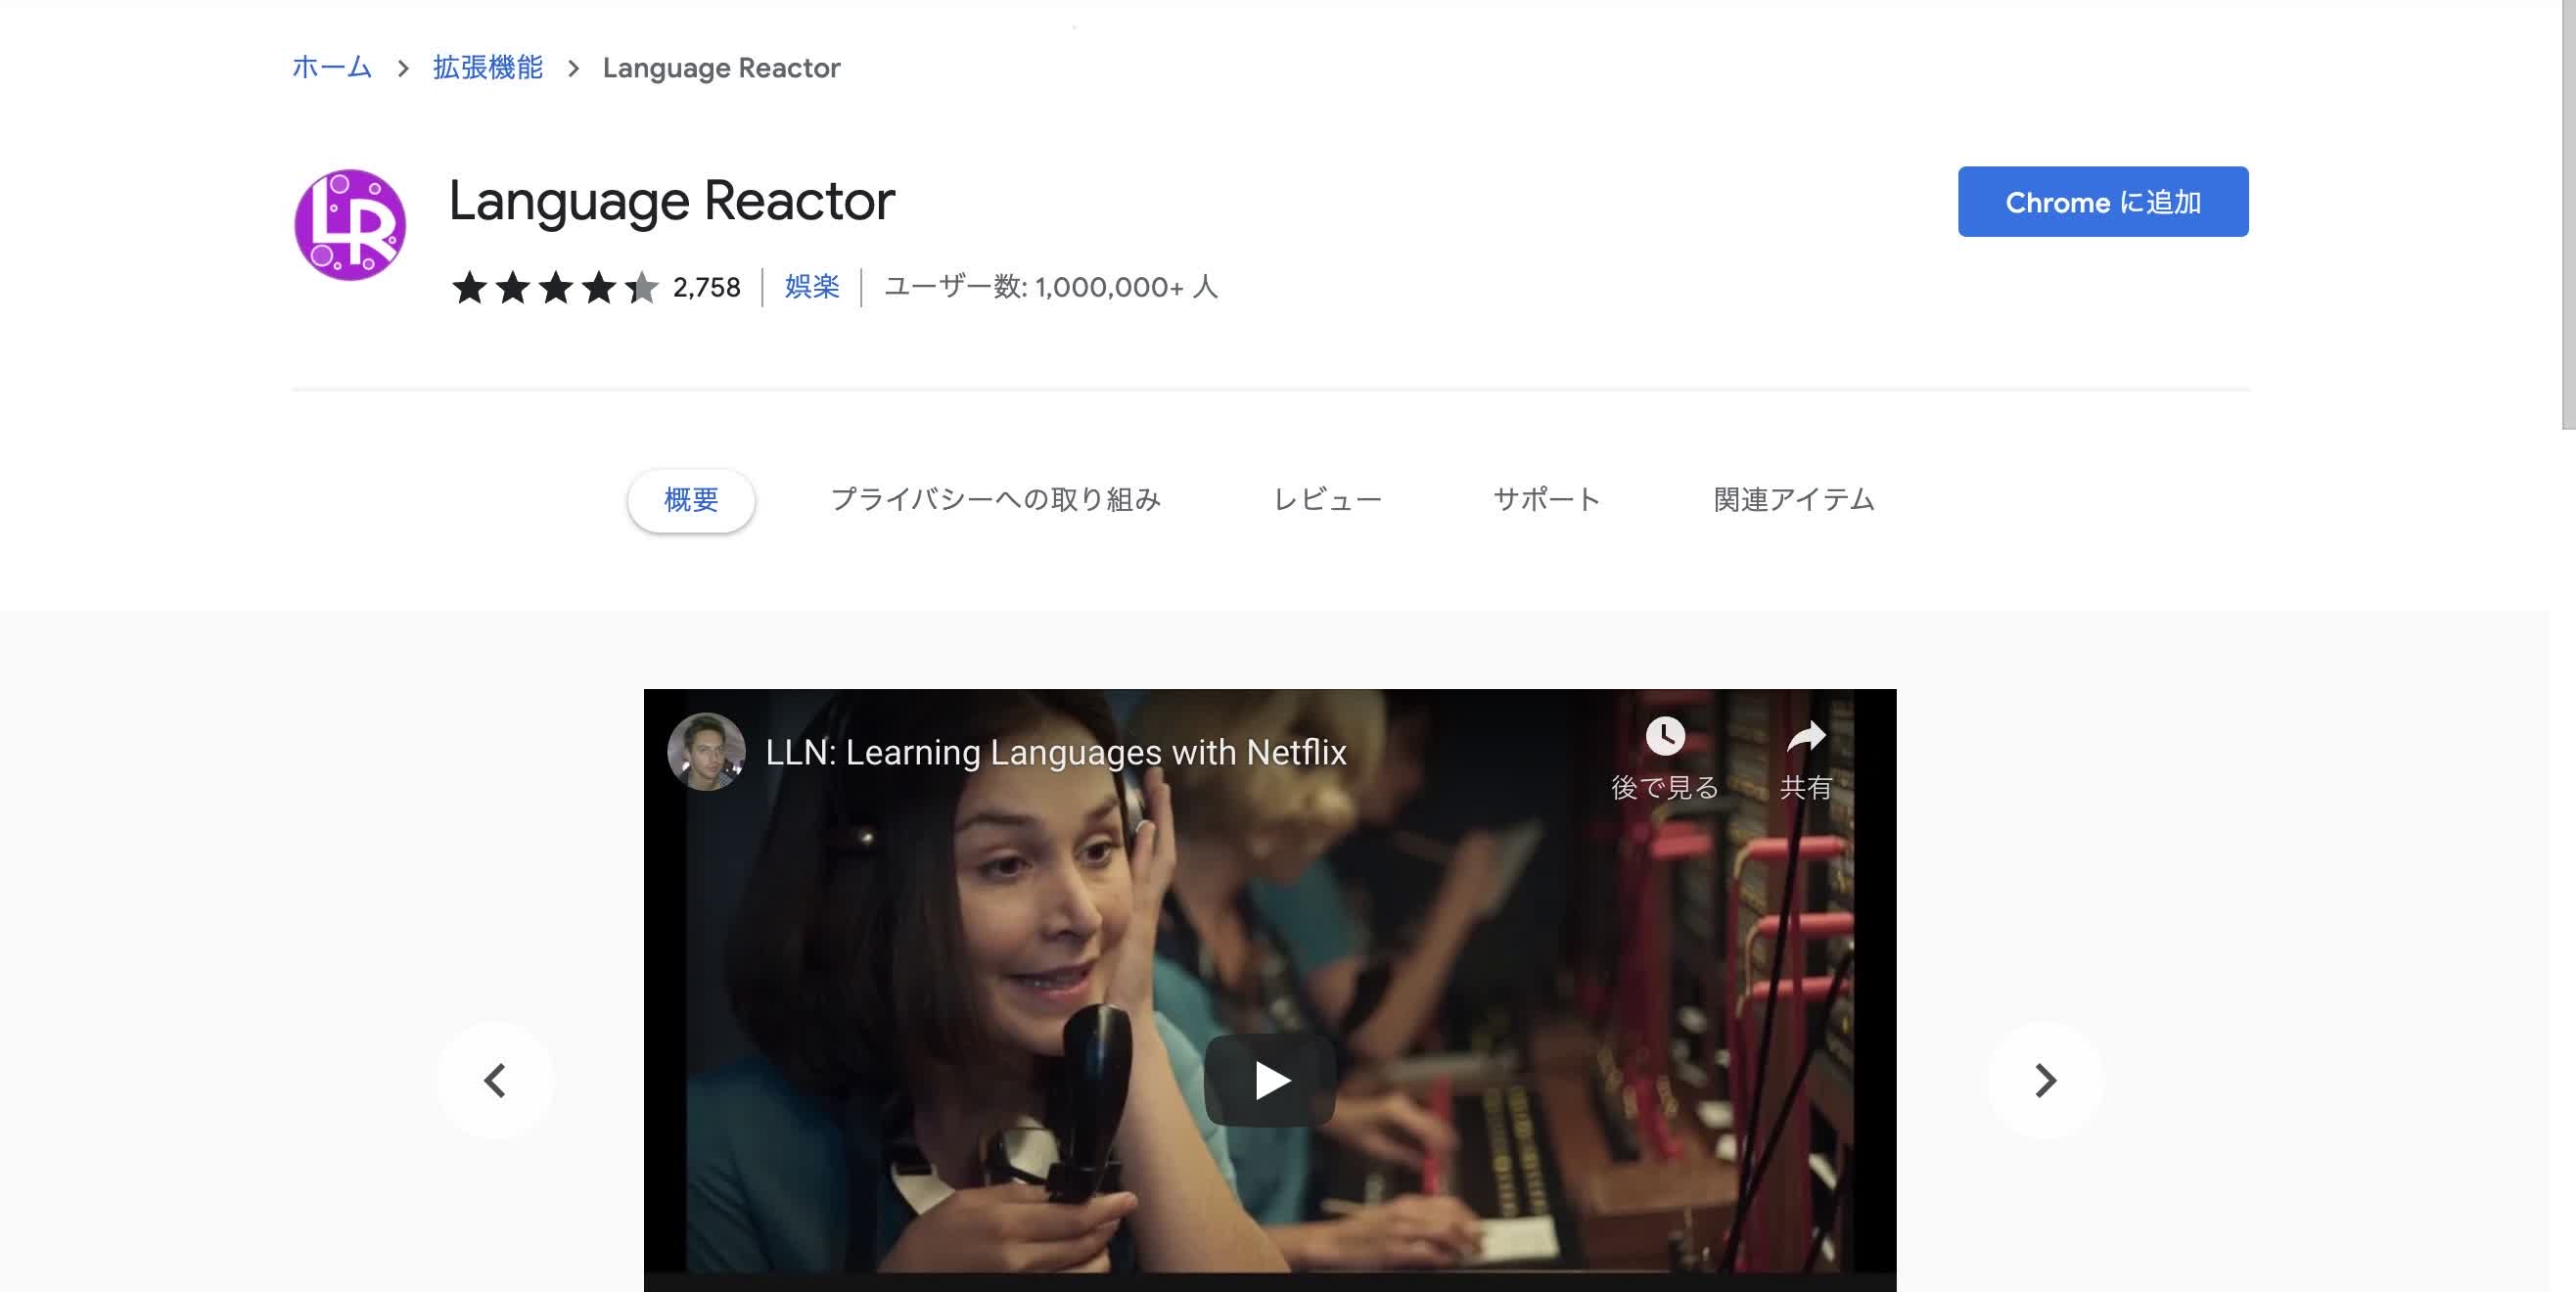 Language Reactor